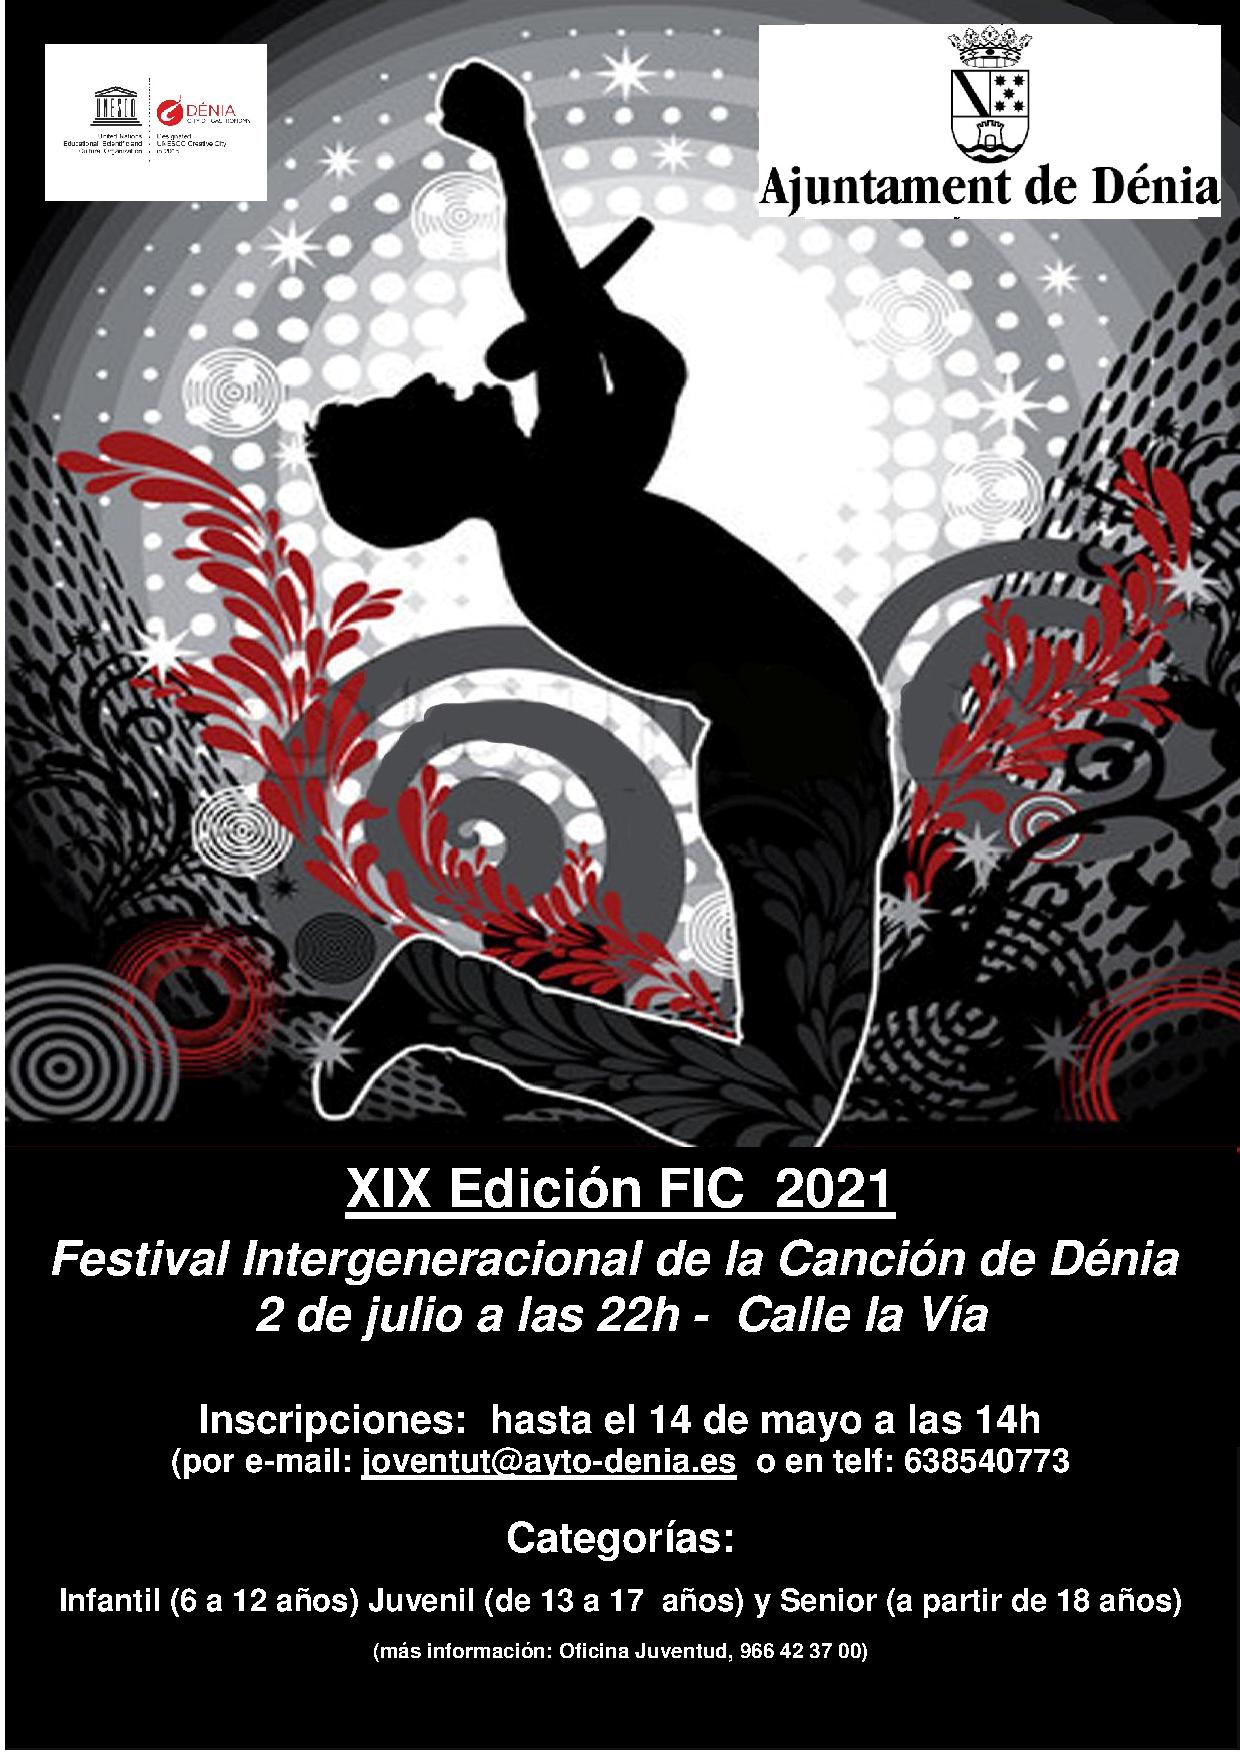 L'Ajuntament de Dénia prepara una nova edició del Festival Intergeneracional de la Cançó...